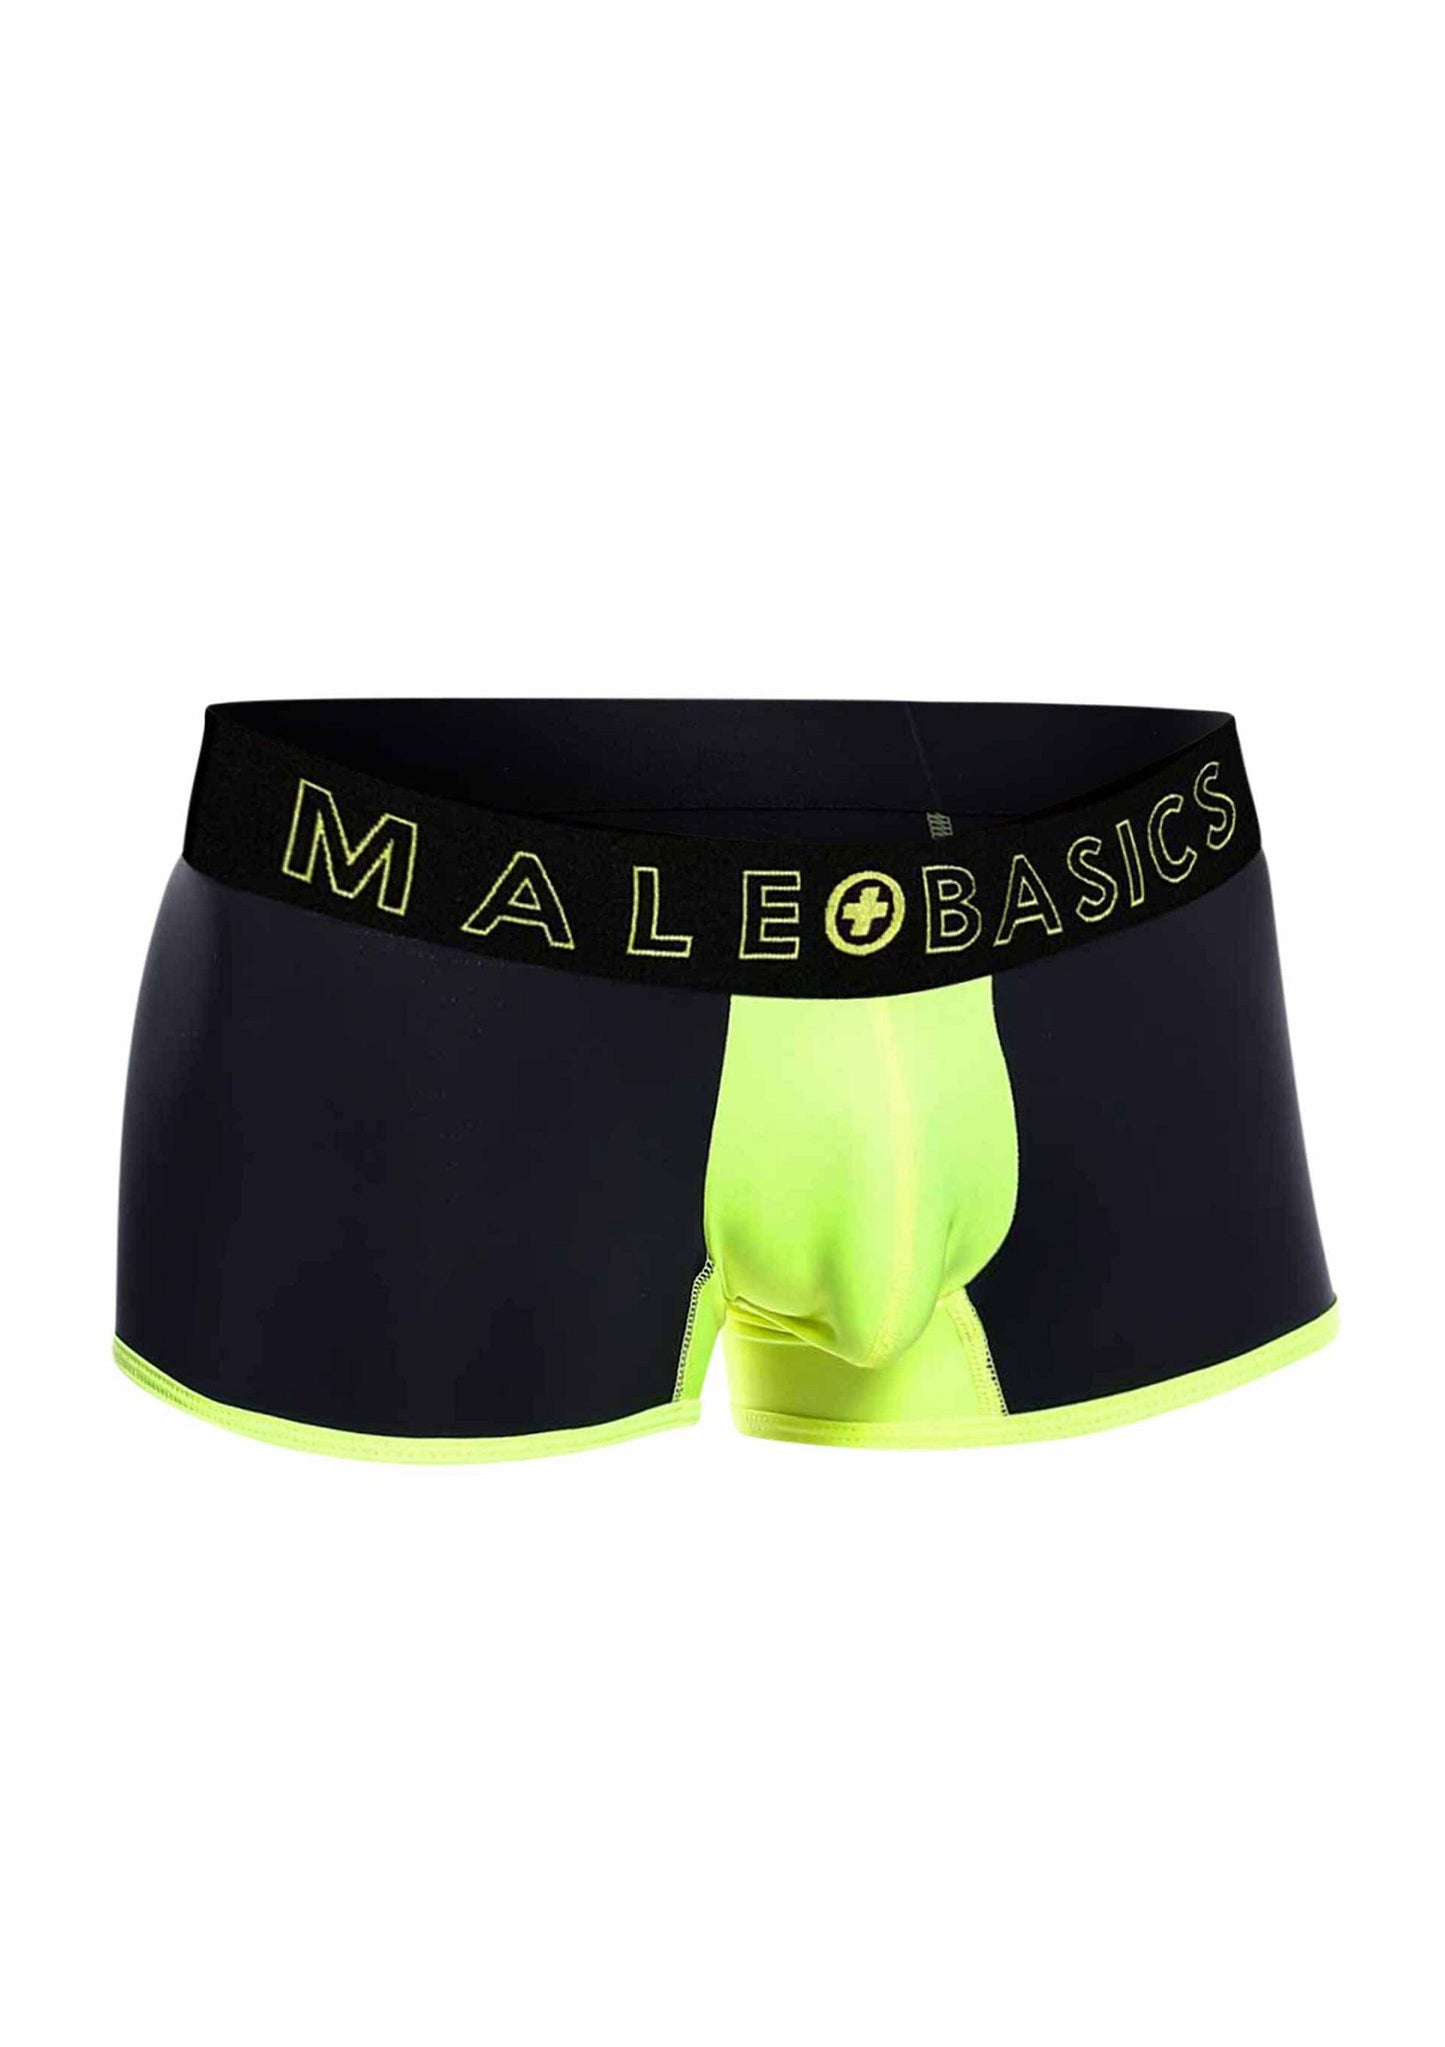 MaleBasics Neon Trunk YELLOW S - 2